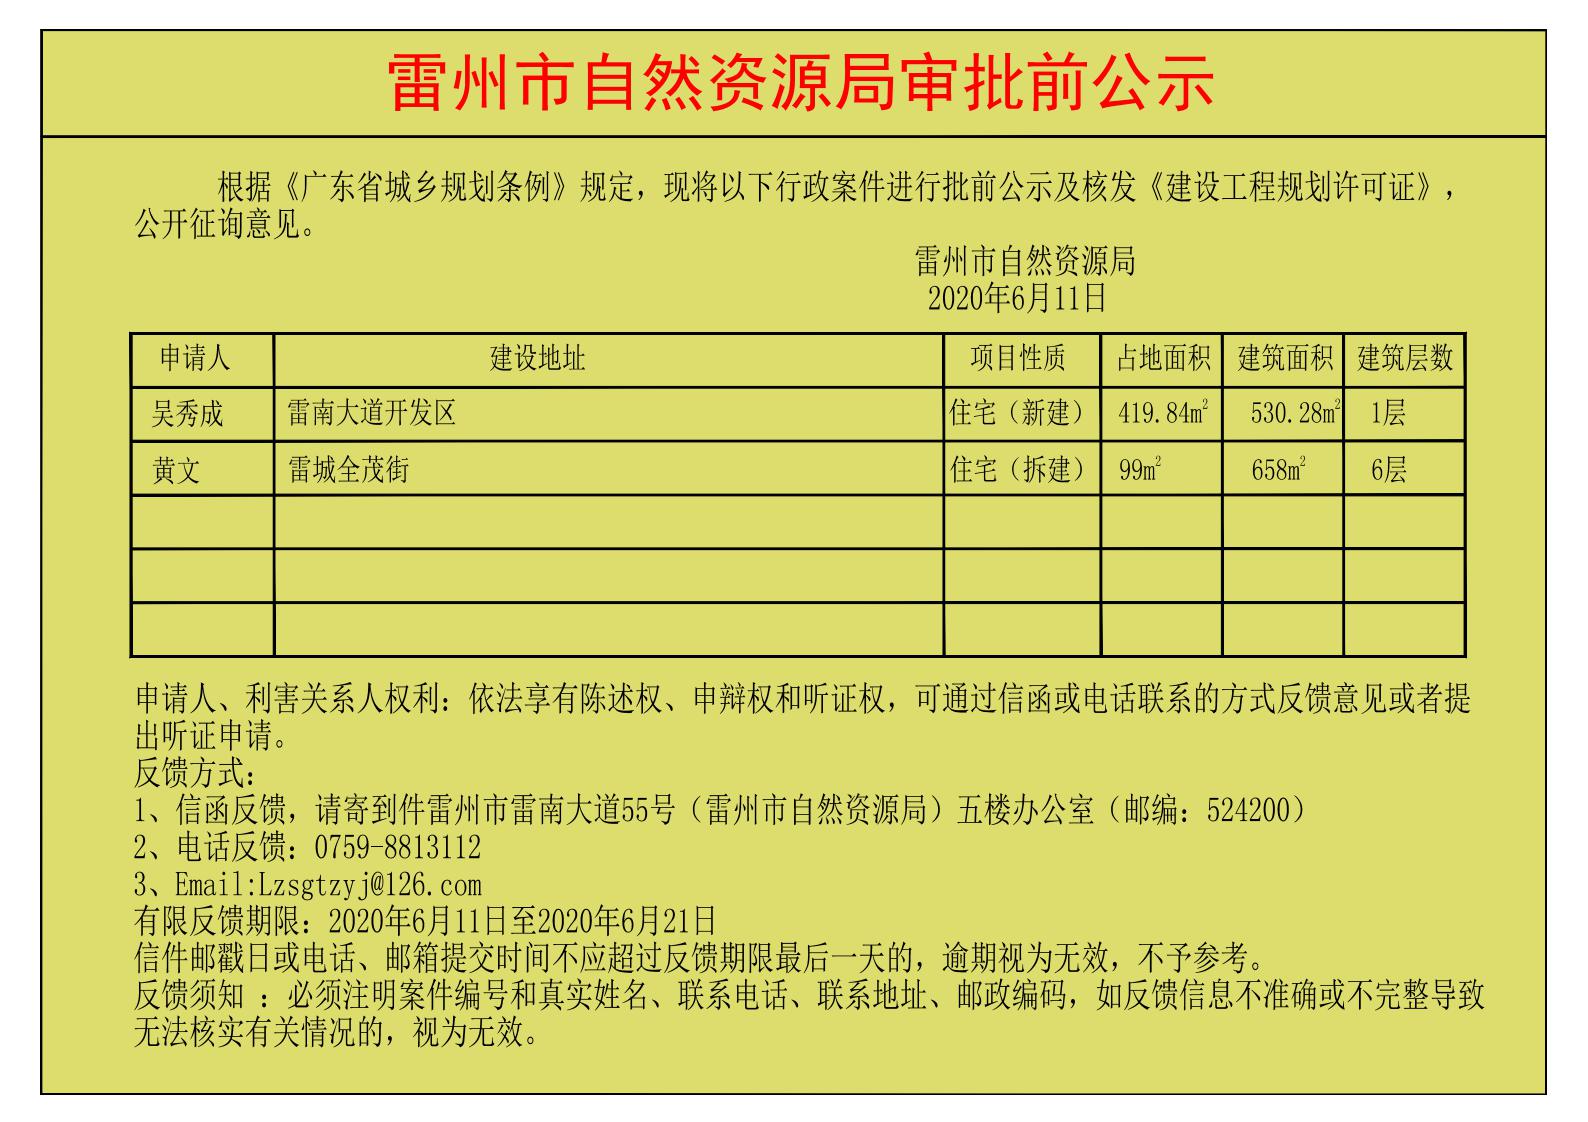 关于吴秀成、黄文核发《建设工程规划许可证》的公示.jpg